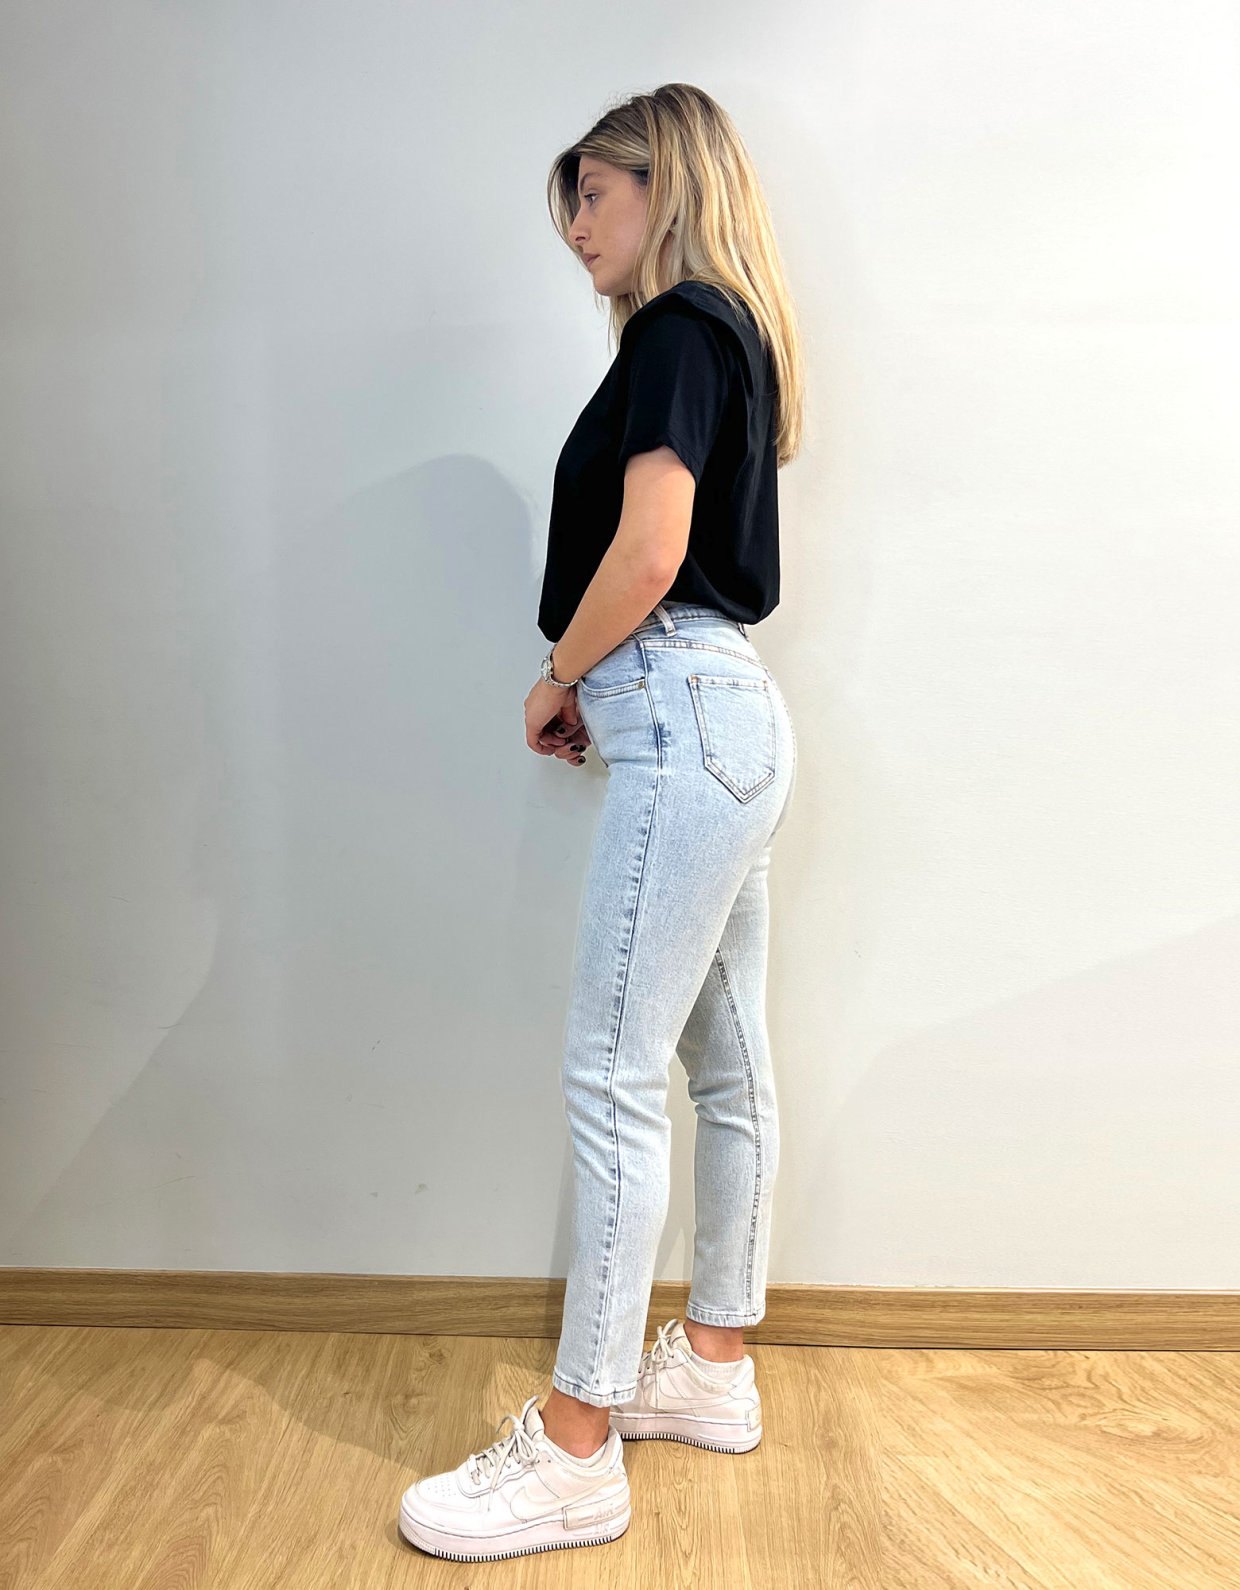 Sac & co Jeans Rina elastic stone light blue denim pants